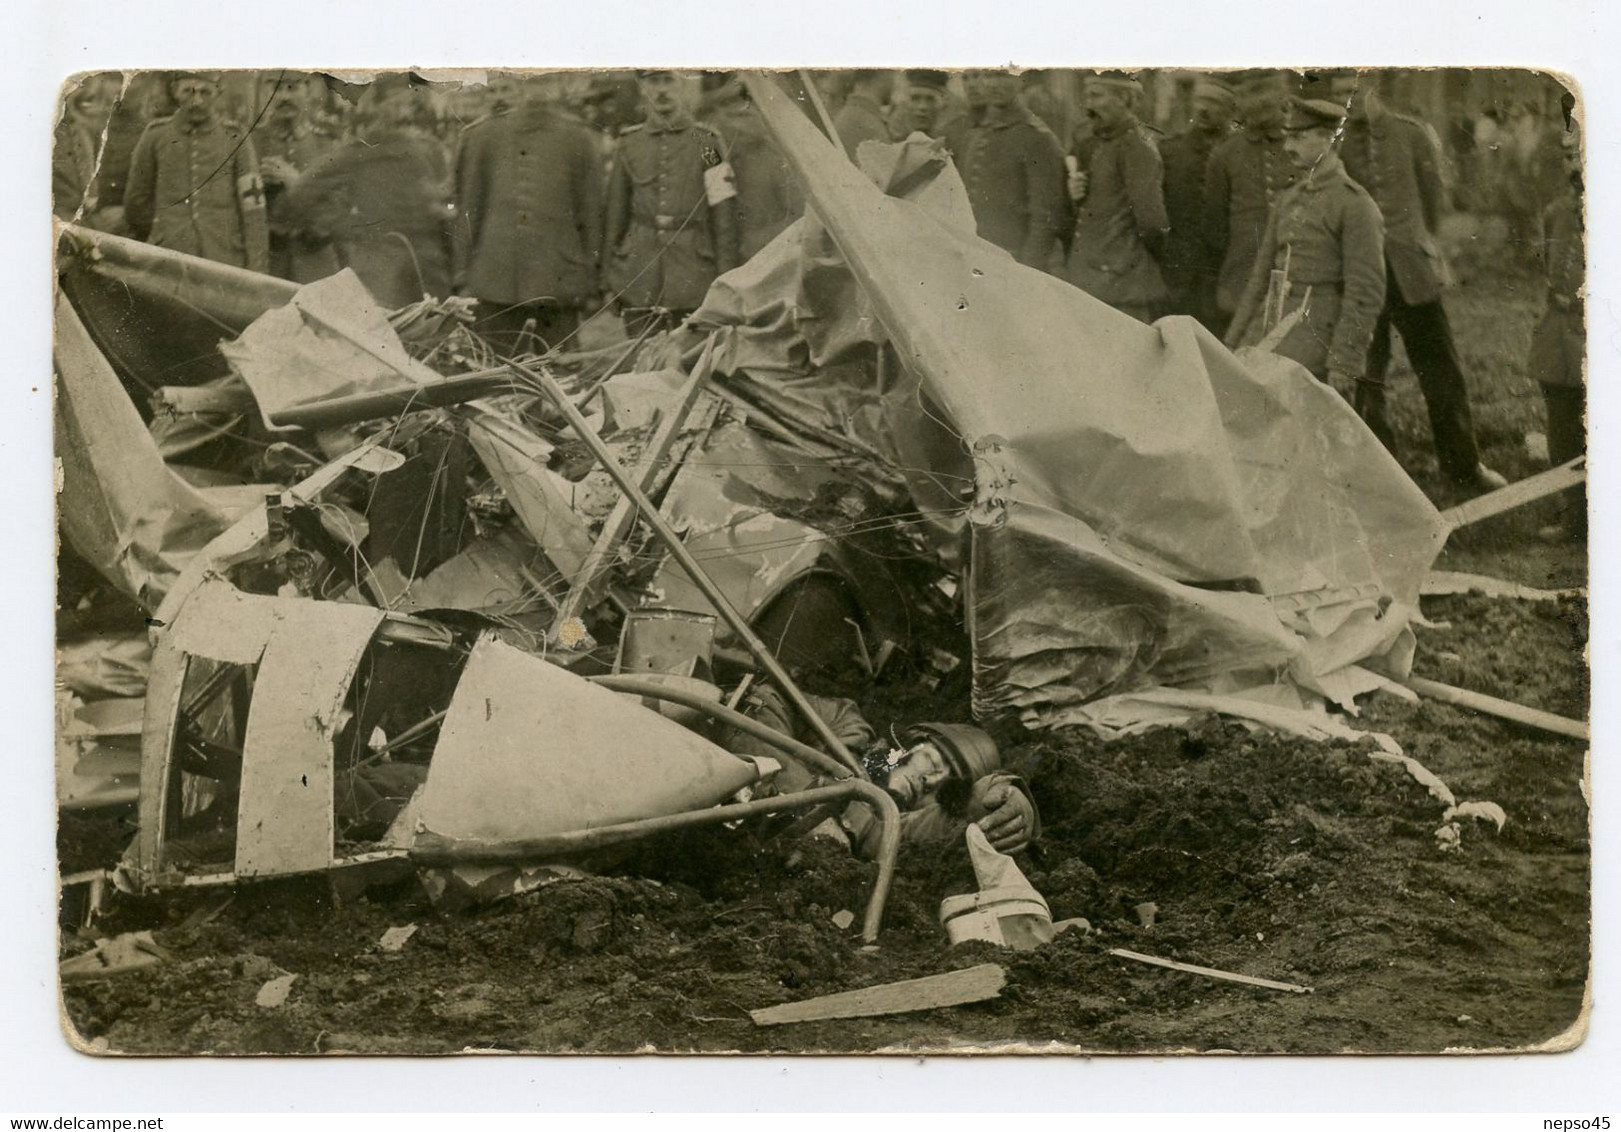 Carte Photo De Guerre 1914-18.Aviation. Aviateur. Avion Abattu.Pilote Mort.Cadavre D'un Soldat,voir Photos - Accidents